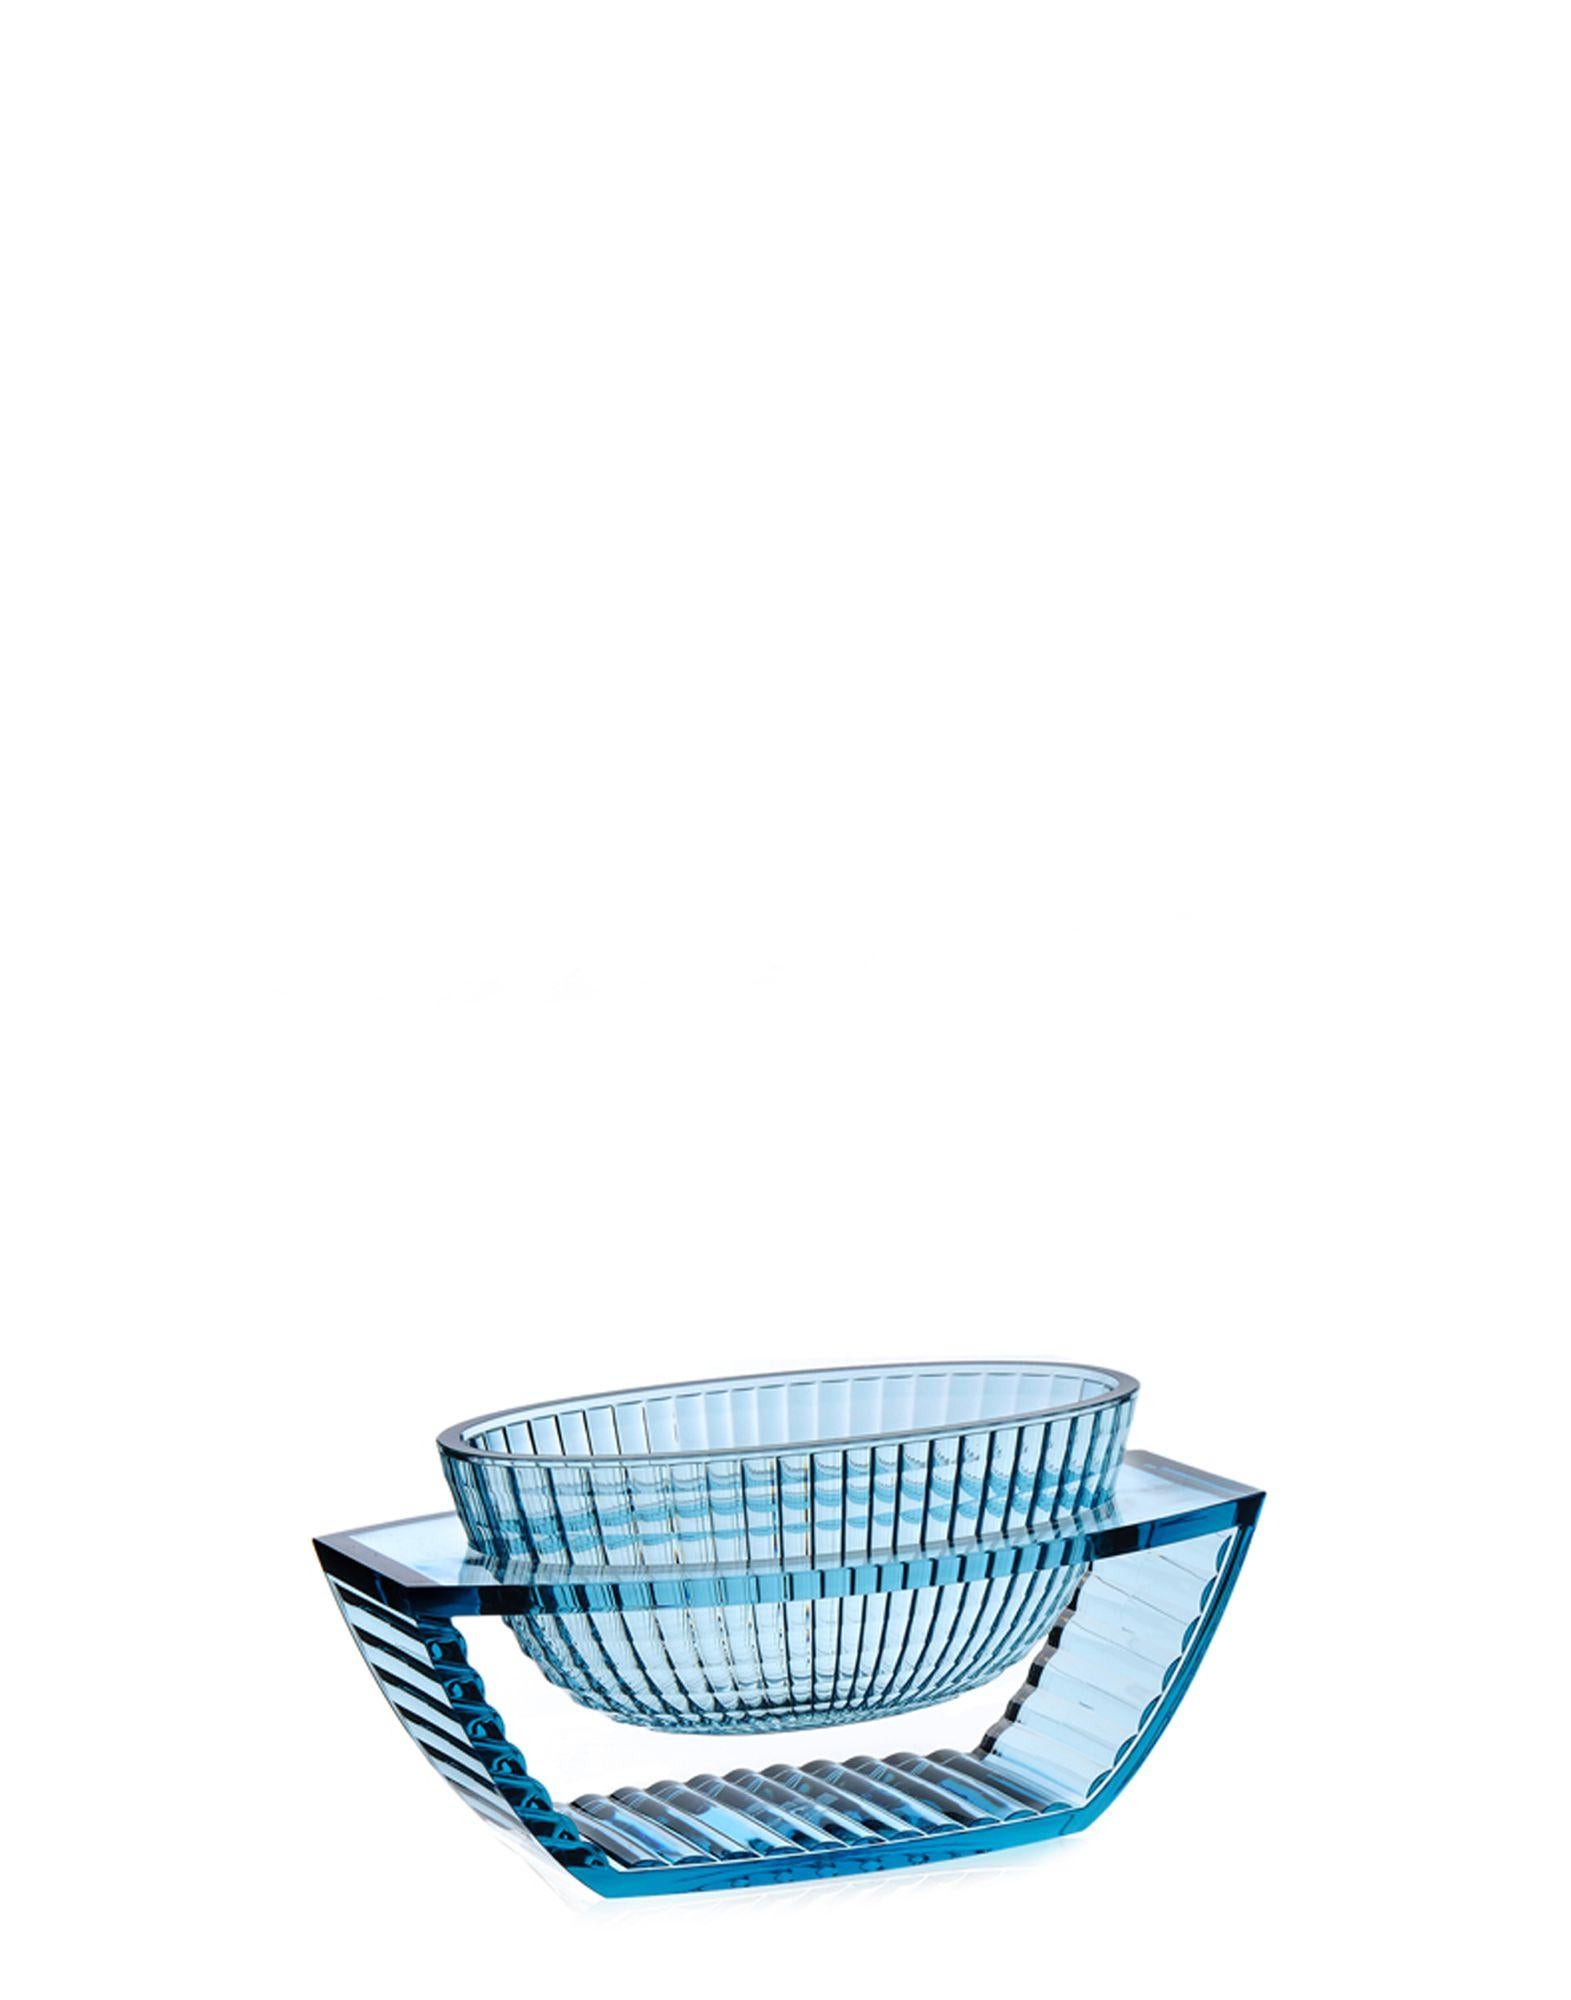 Eugeni Quitllet conçoit une précieuse collection de vases décoratifs en PMMA transparent. La ligne se compose d'un vase et d'un centre de table, qui se distinguent par leur géométrie élégante et leur inspiration art déco. La particularité de ces